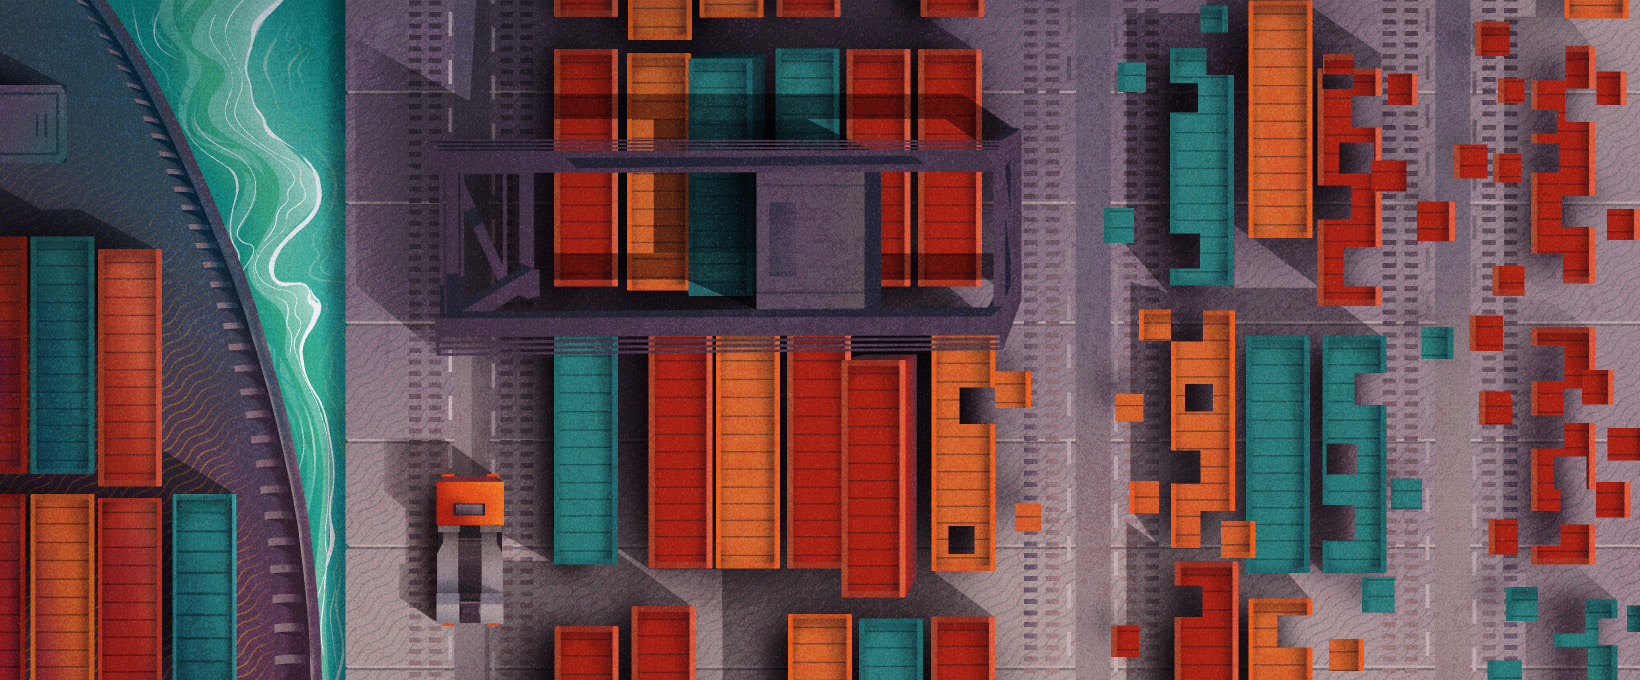 Die Güterbeförderung: Warum sollte eine Logistiksoftware entwickelt werden?